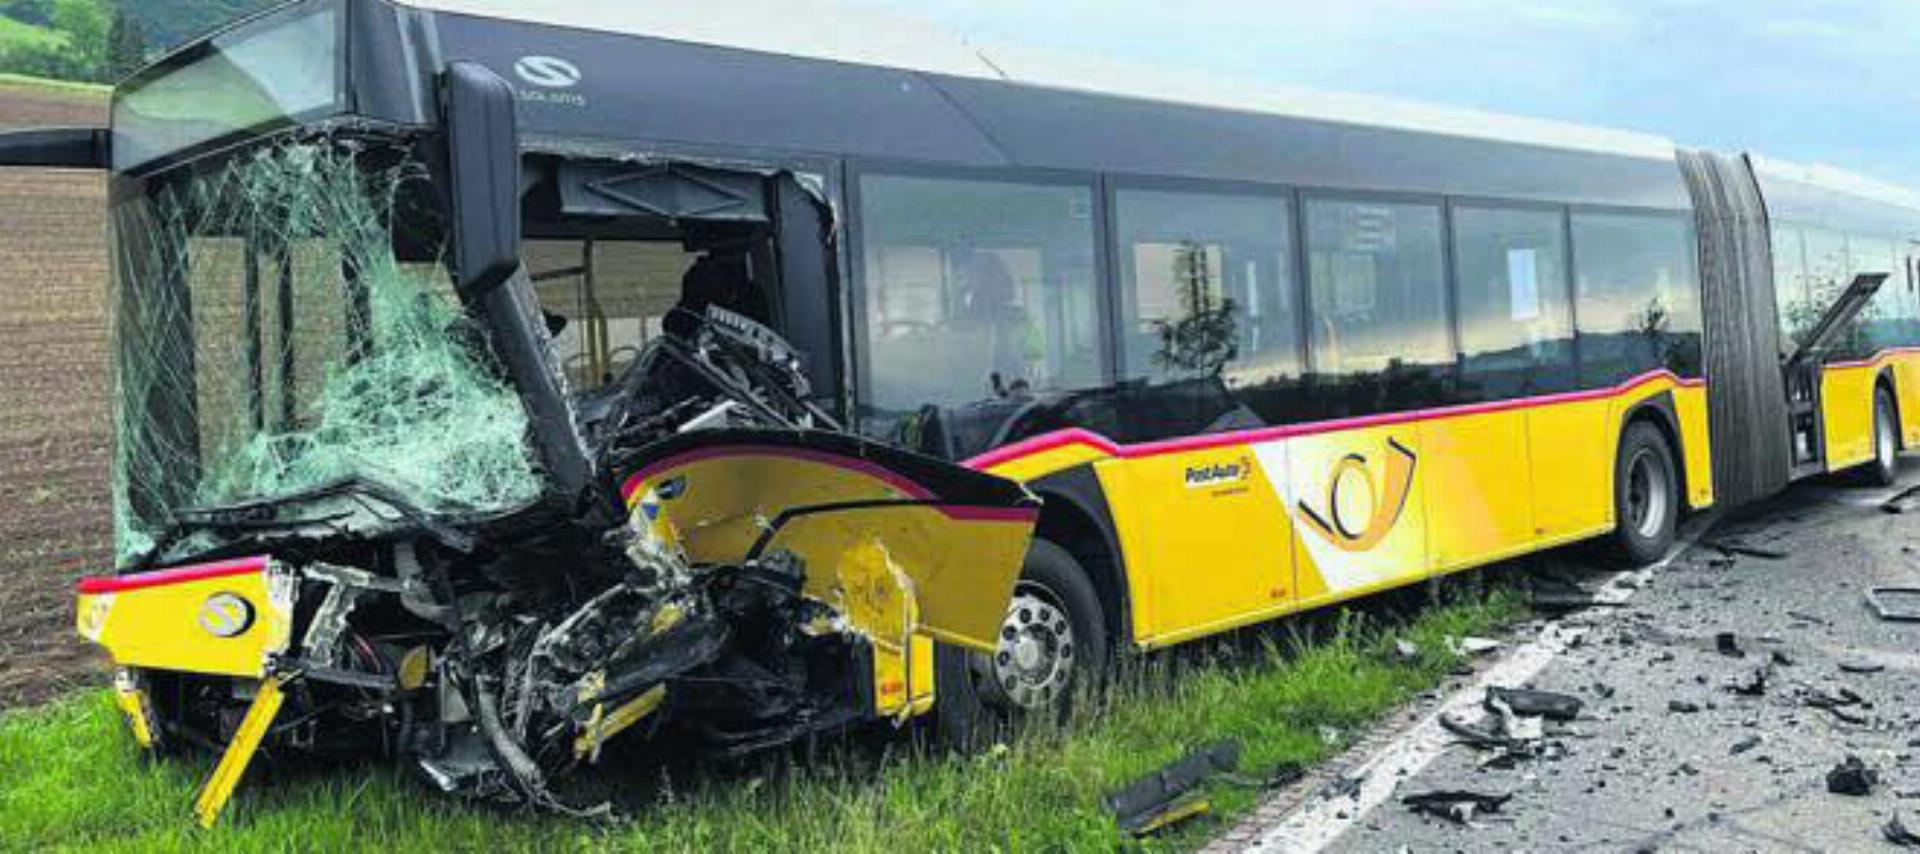 Der Bus wie auch der Personenwagen wurden durch die Kollision eingedrückt. Bild: pz